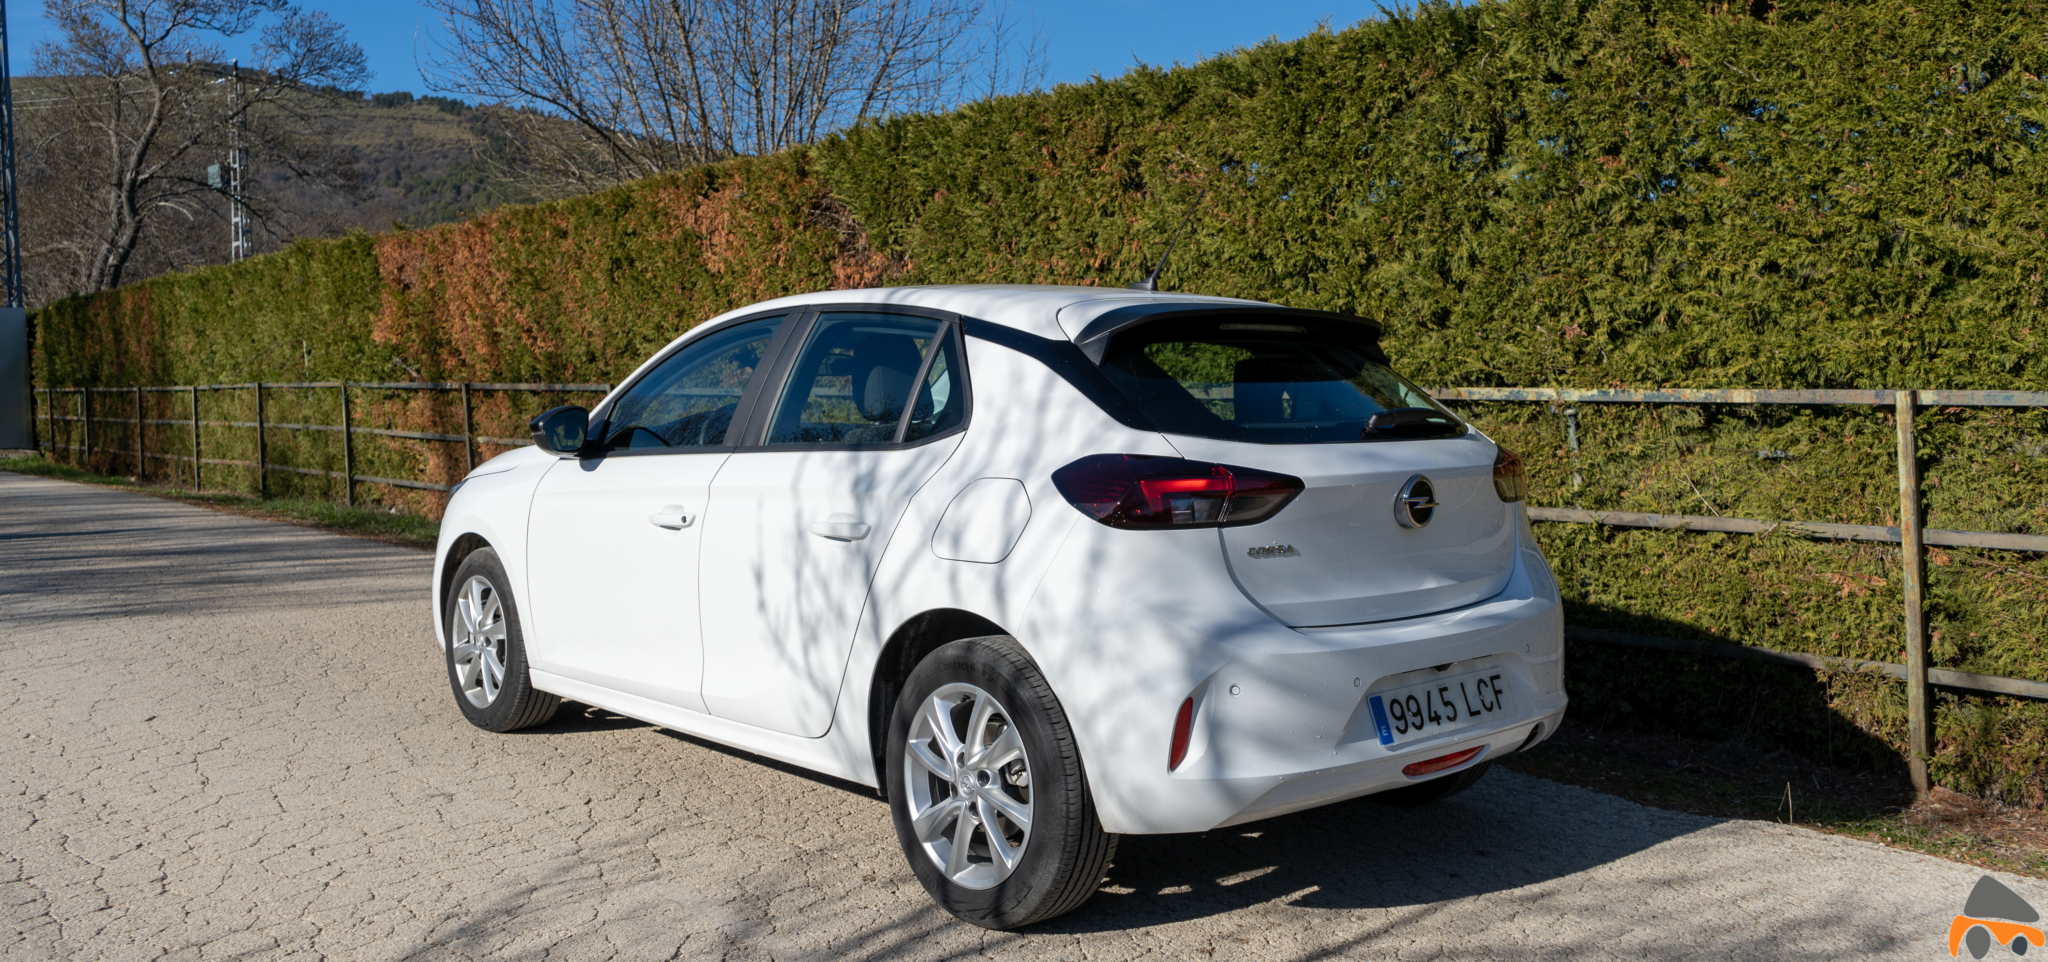 Trasera lateral izquierdo Opel Corsa Edition 2020 - Opel Corsa 2020: Un utilitario para tenerlo muy en cuenta